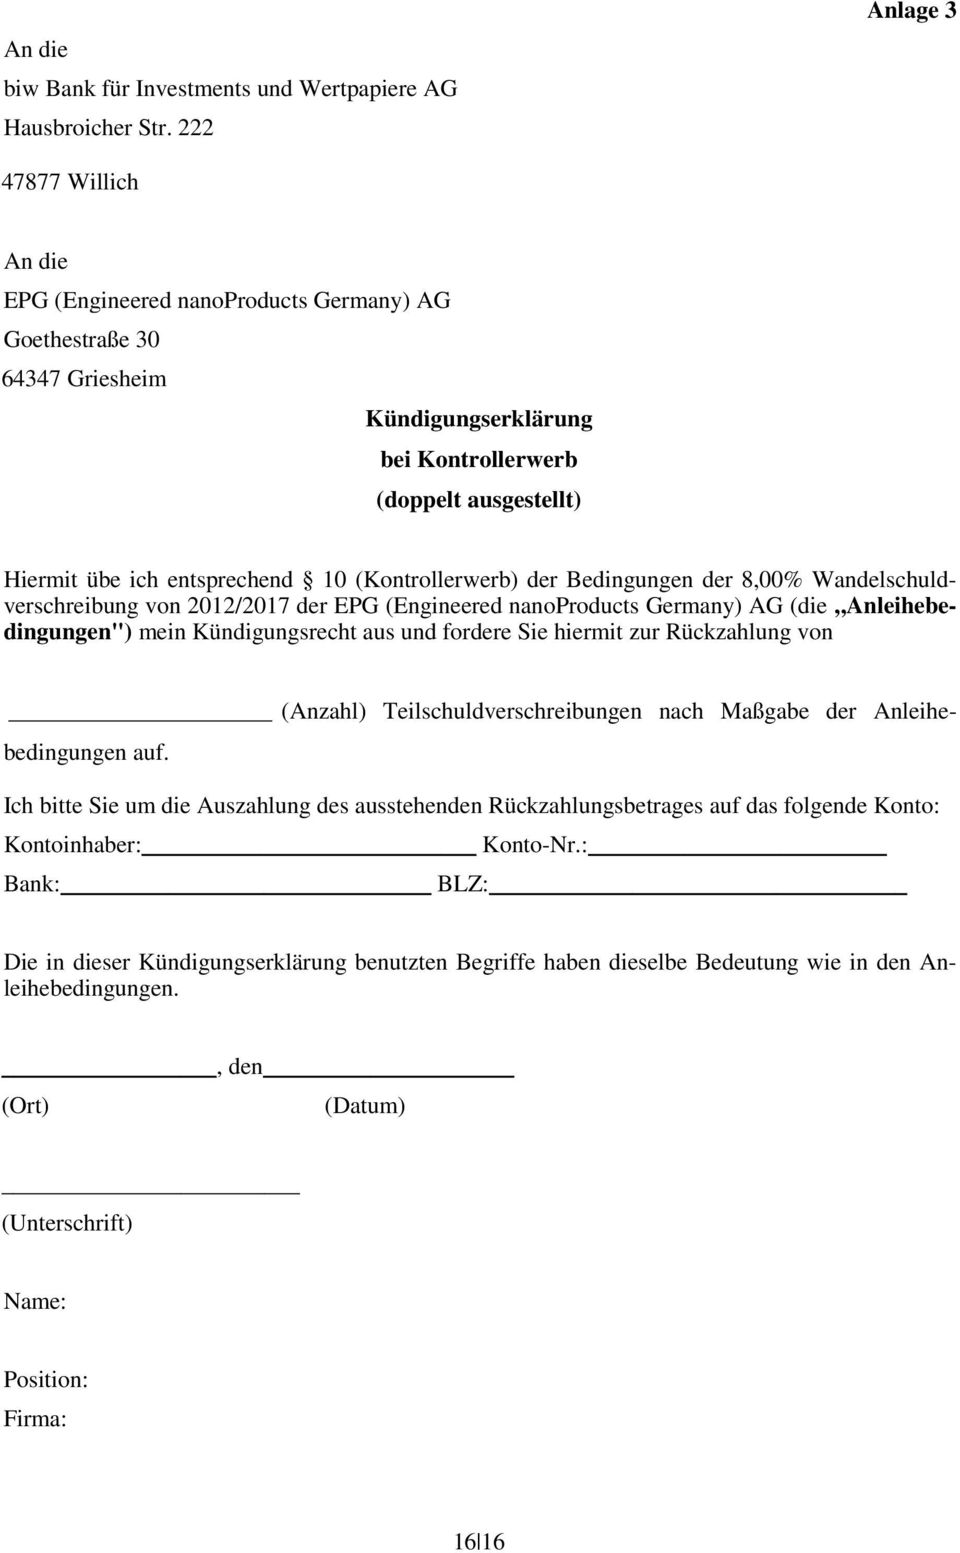 (Kontrollerwerb) der Bedingungen der 8,00% Wandelschuldverschreibung von 2012/2017 der EPG (Engineered nanoproducts Germany) AG (die Anleihebedingungen") mein Kündigungsrecht aus und fordere Sie